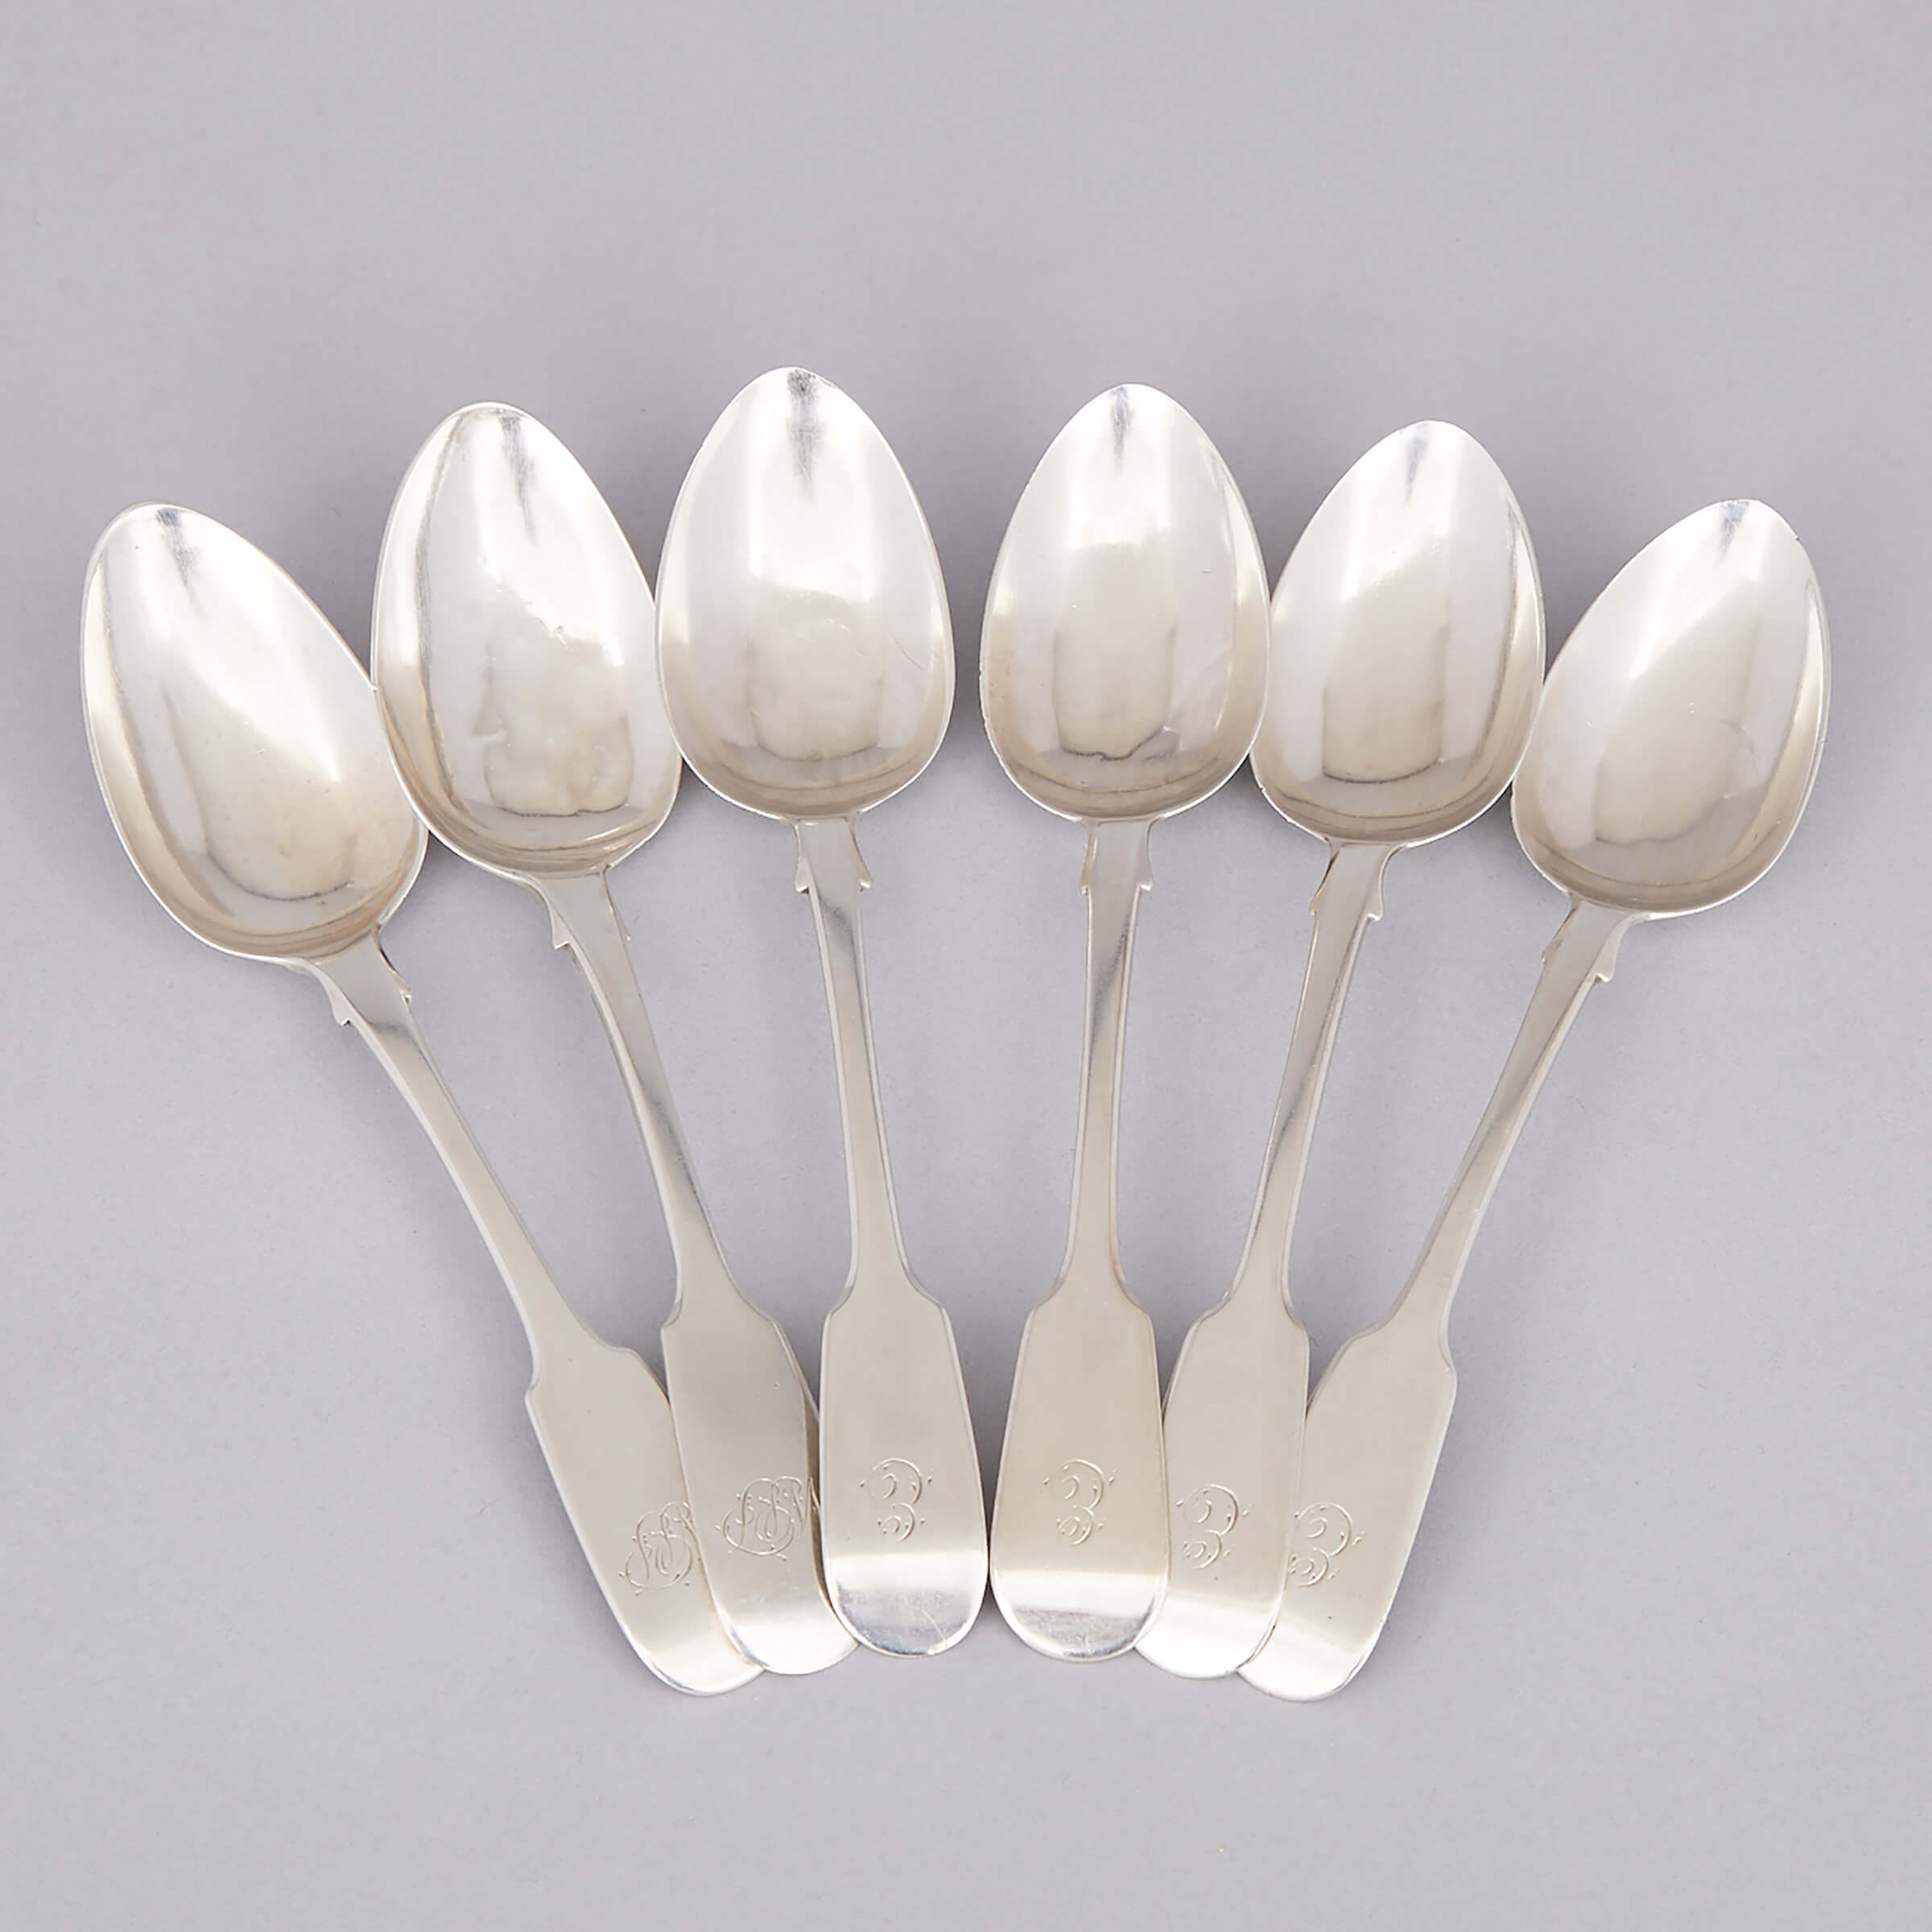 Six Victorian Silver Fiddle Pattern Dessert Spoons, Robert Wallis and John Robert Harris, London, 1849/51